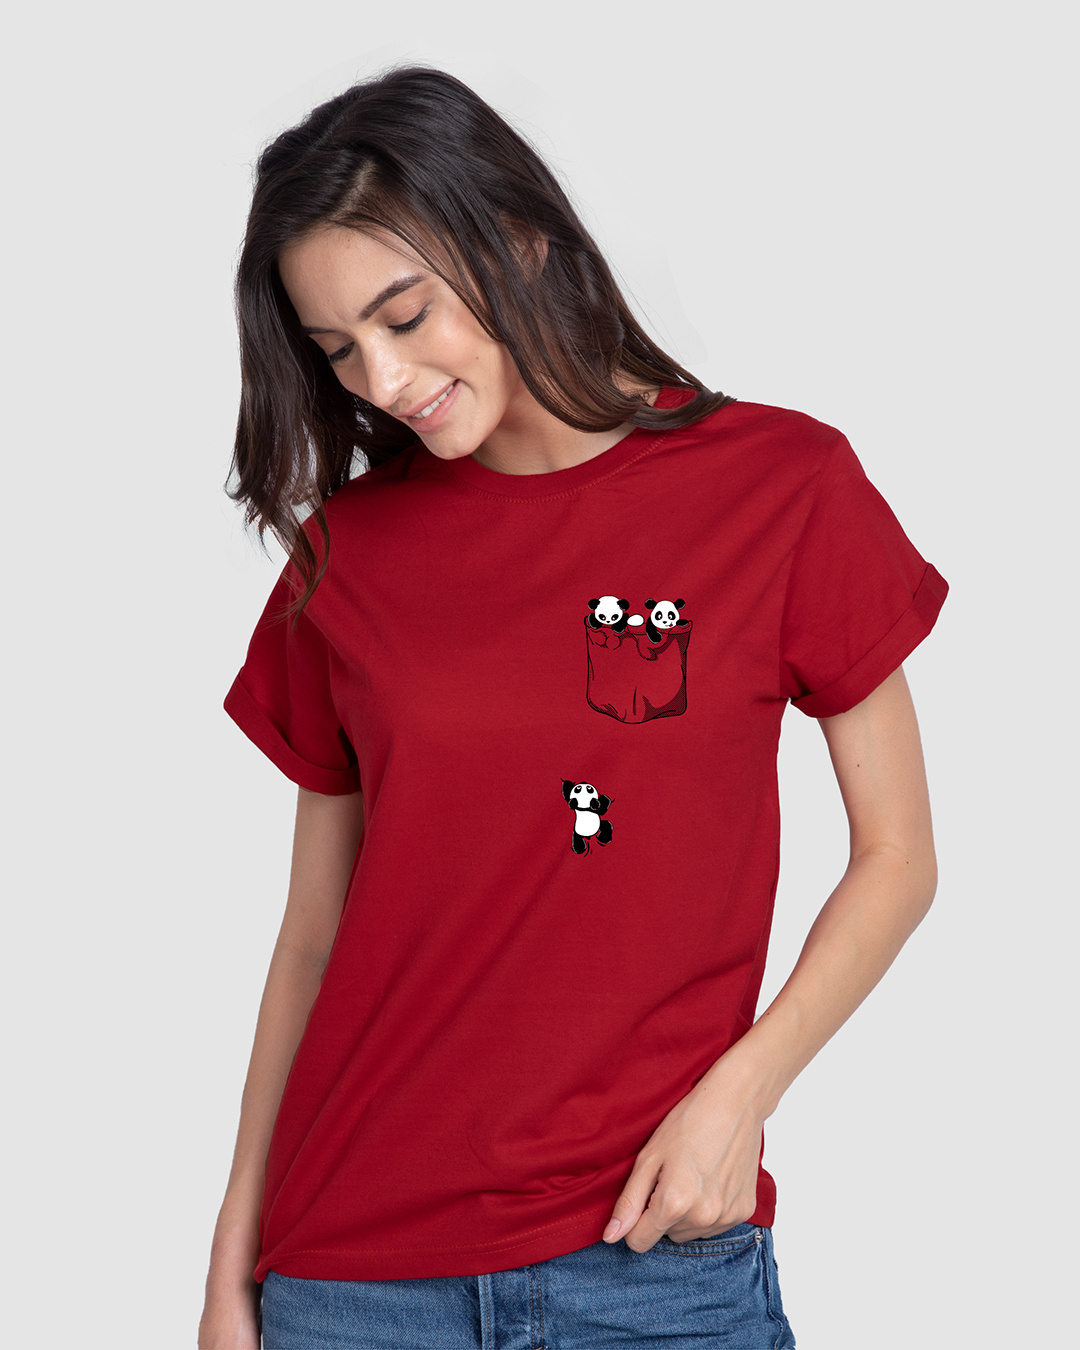 panda t shirt for women